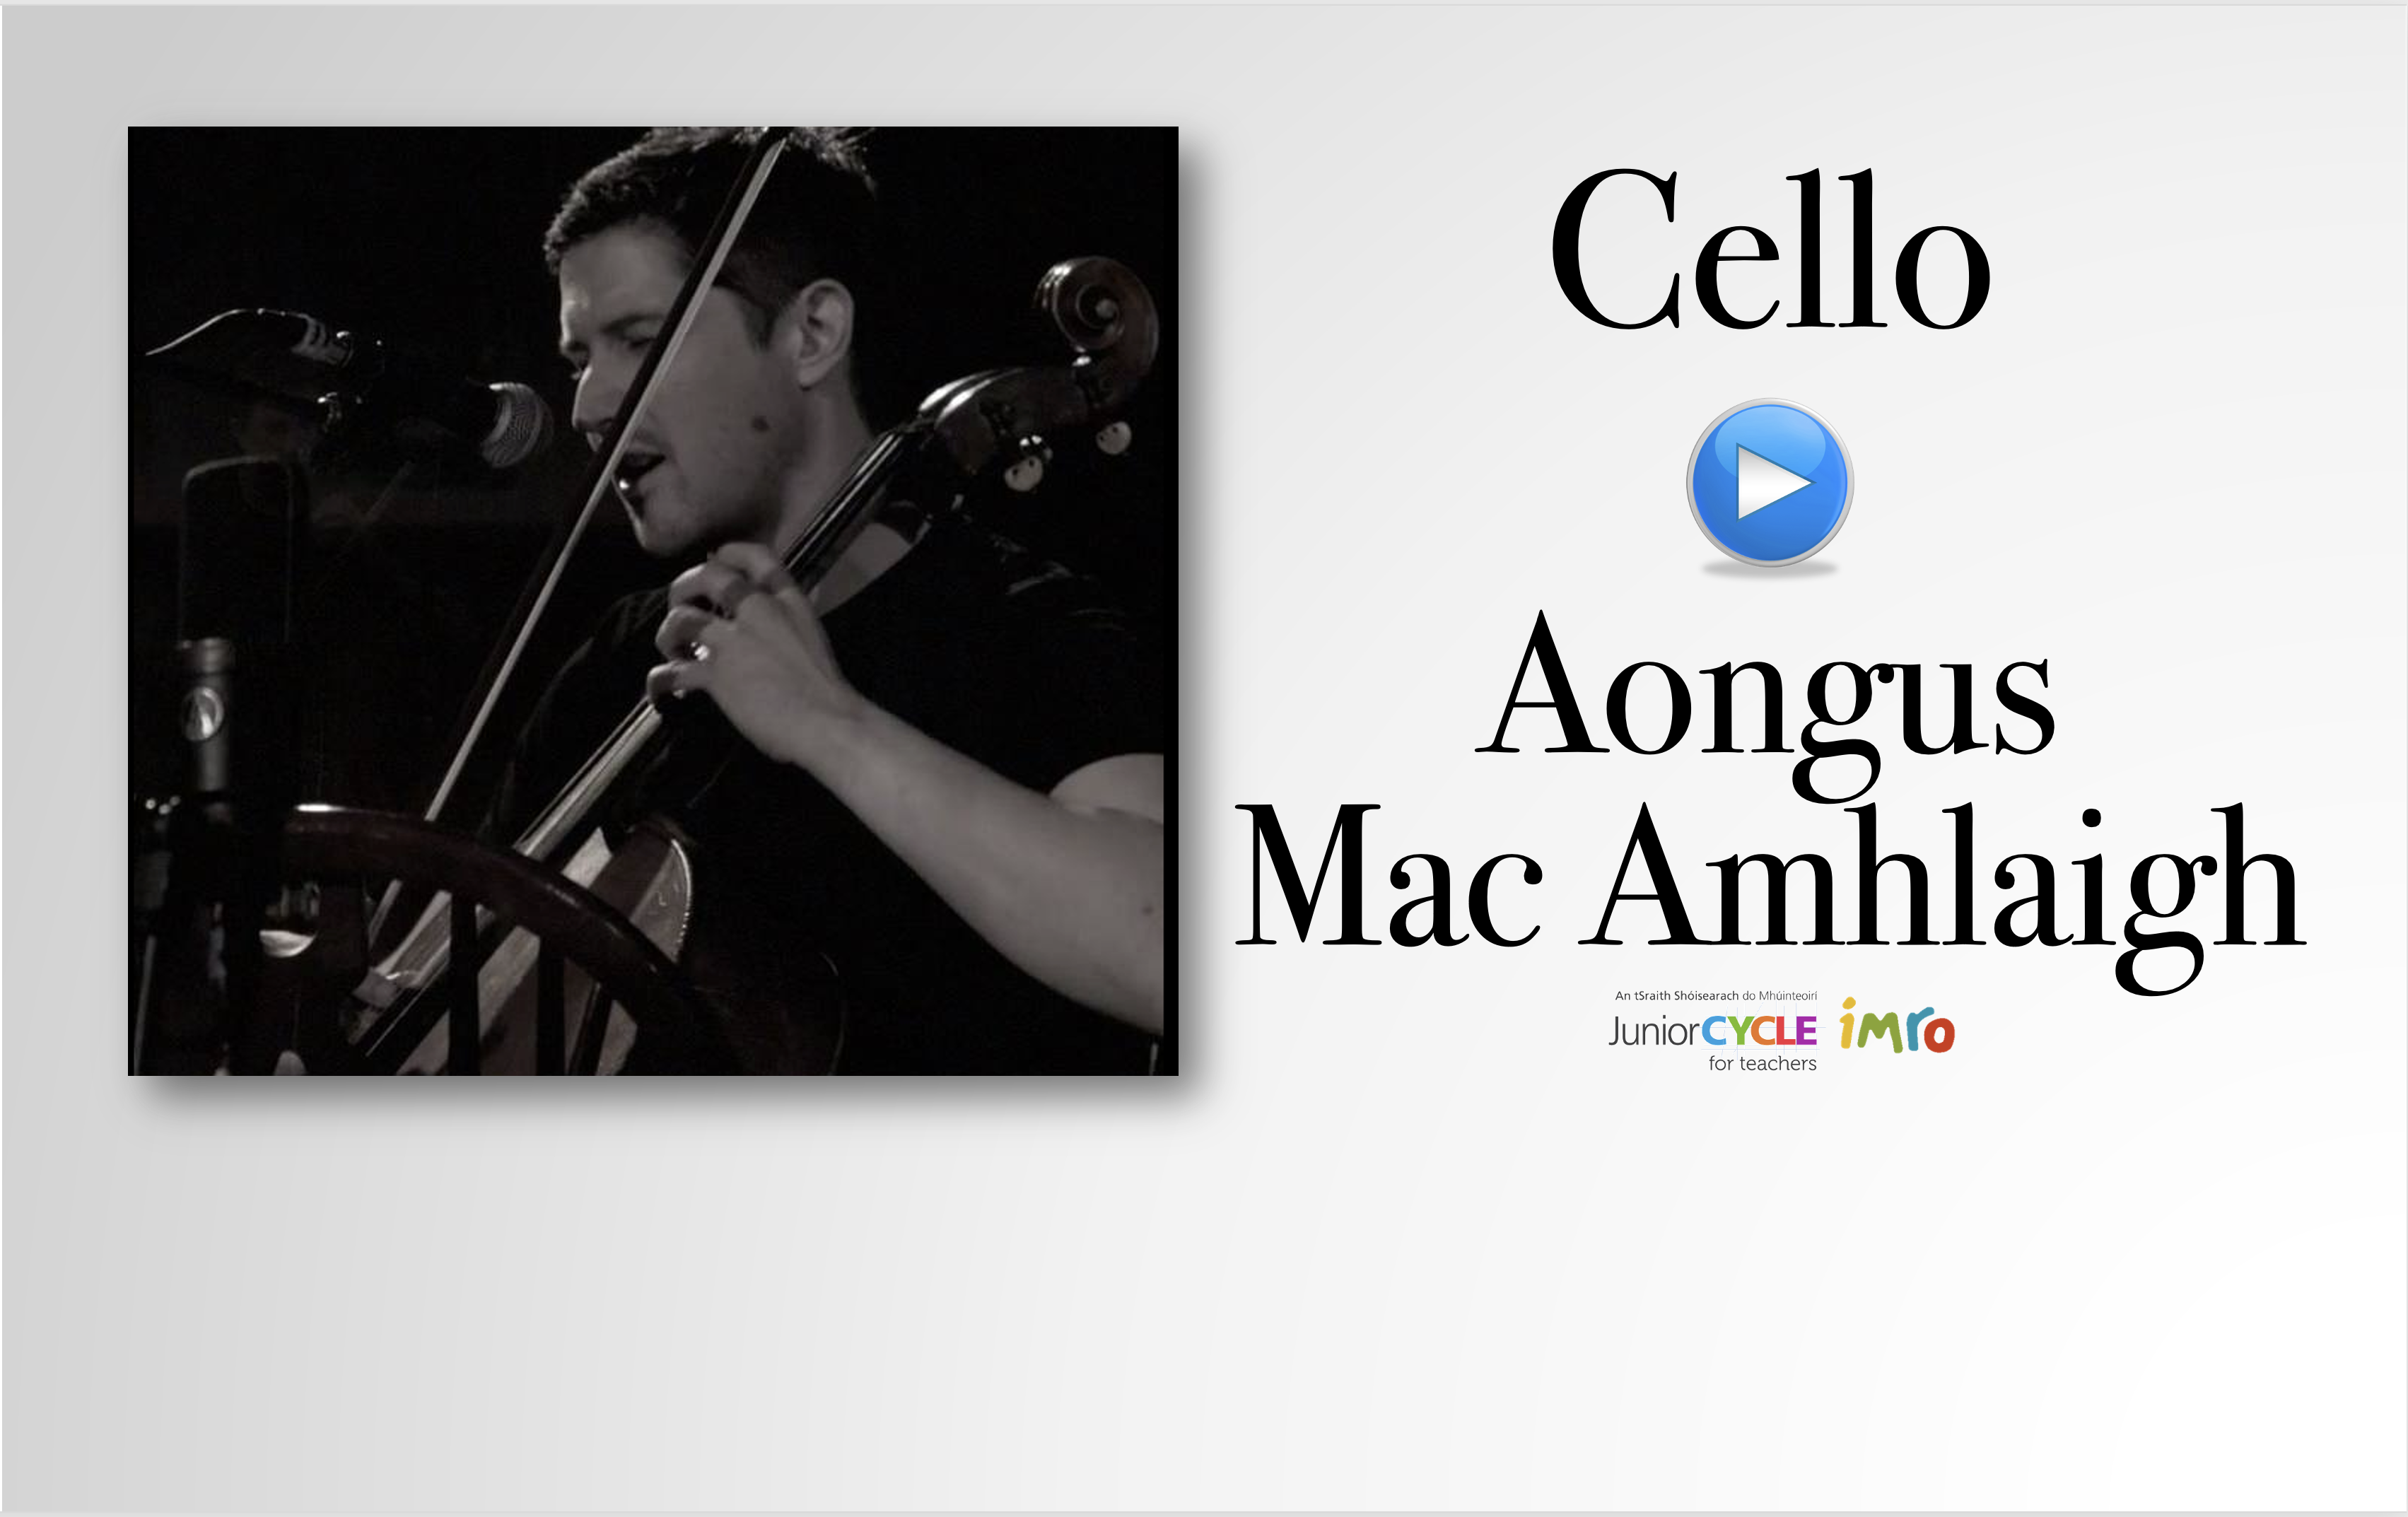 Meet the Cello 1